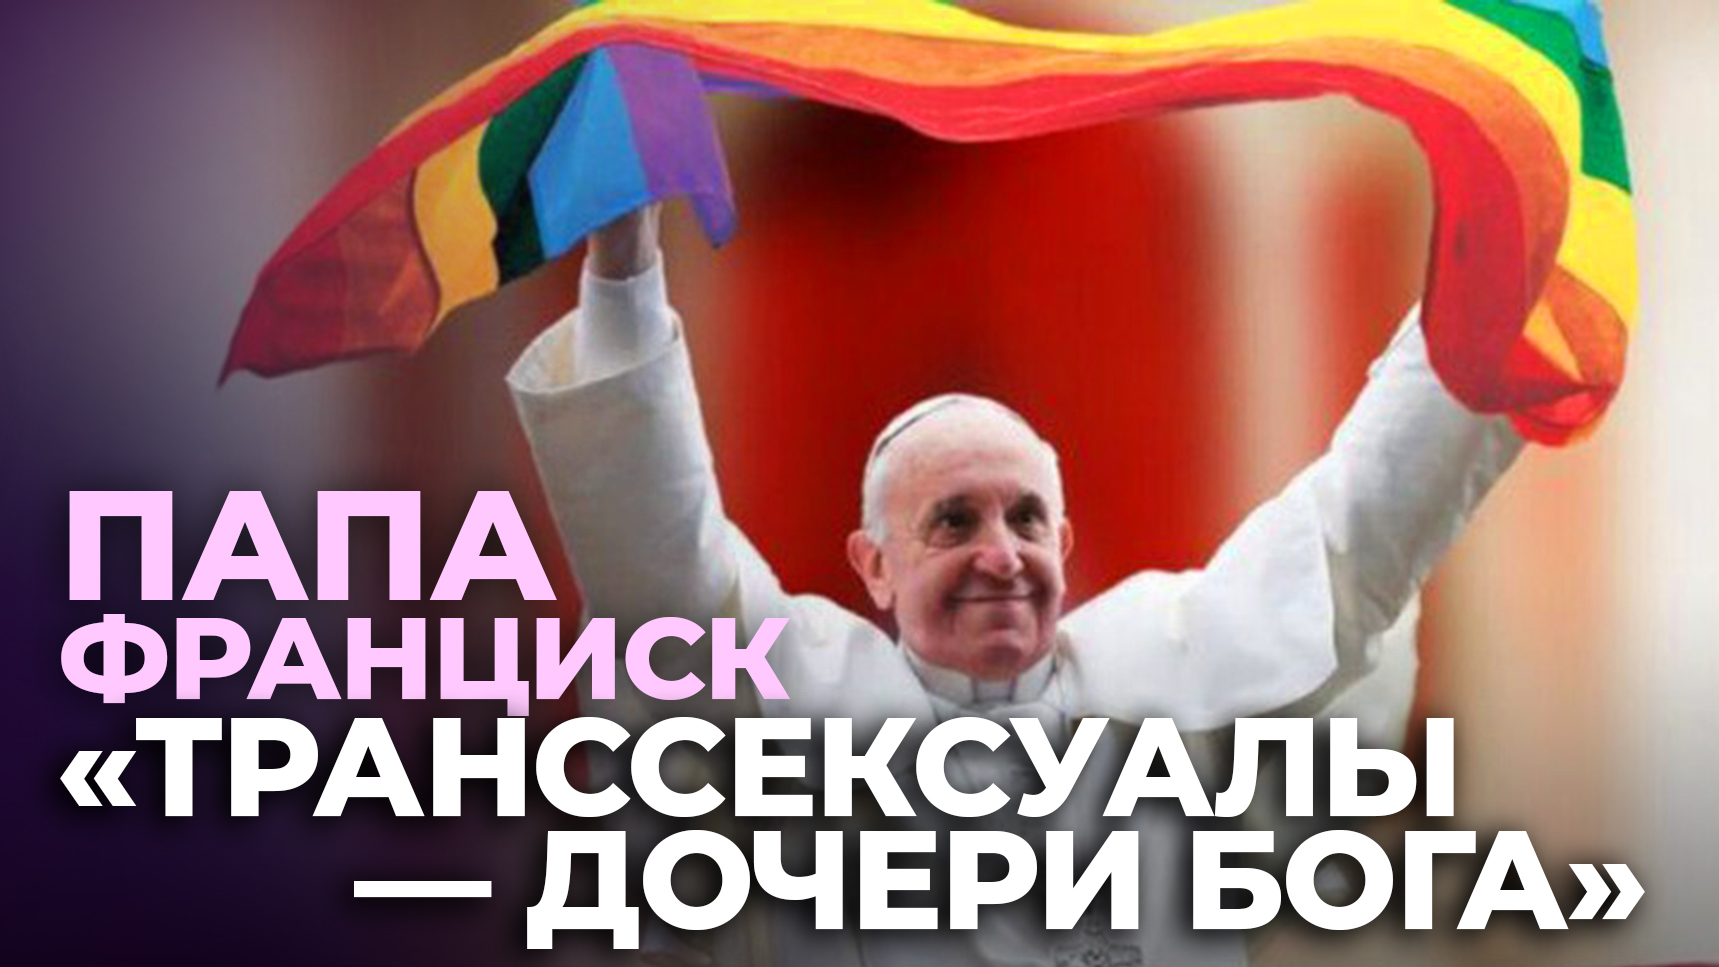 В Москве покажут кино о карагандинском транссексуале (видео)